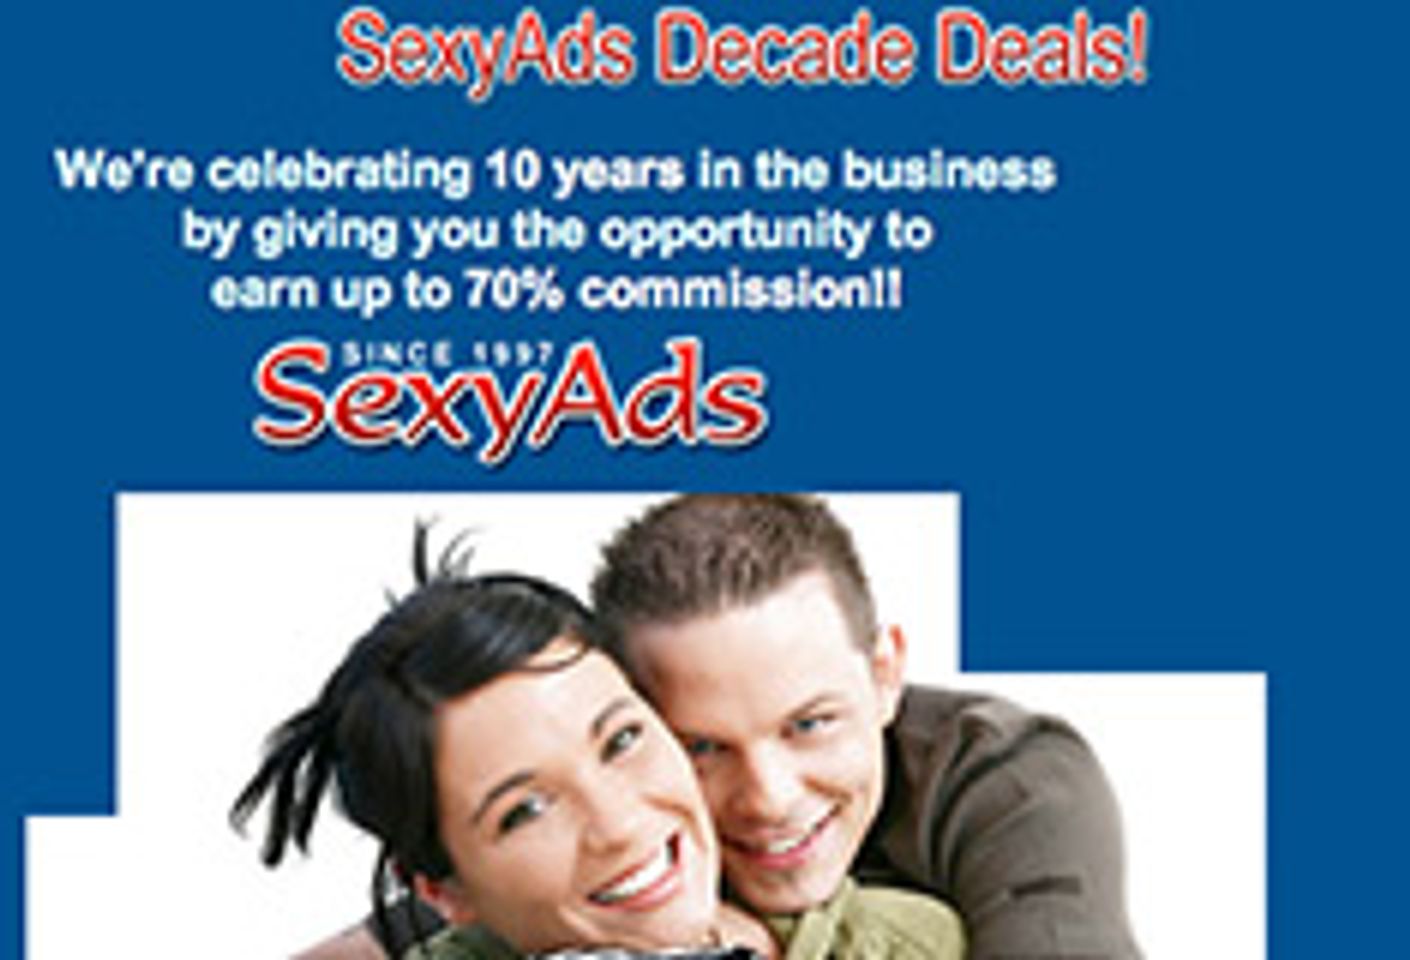 Sexyads.com